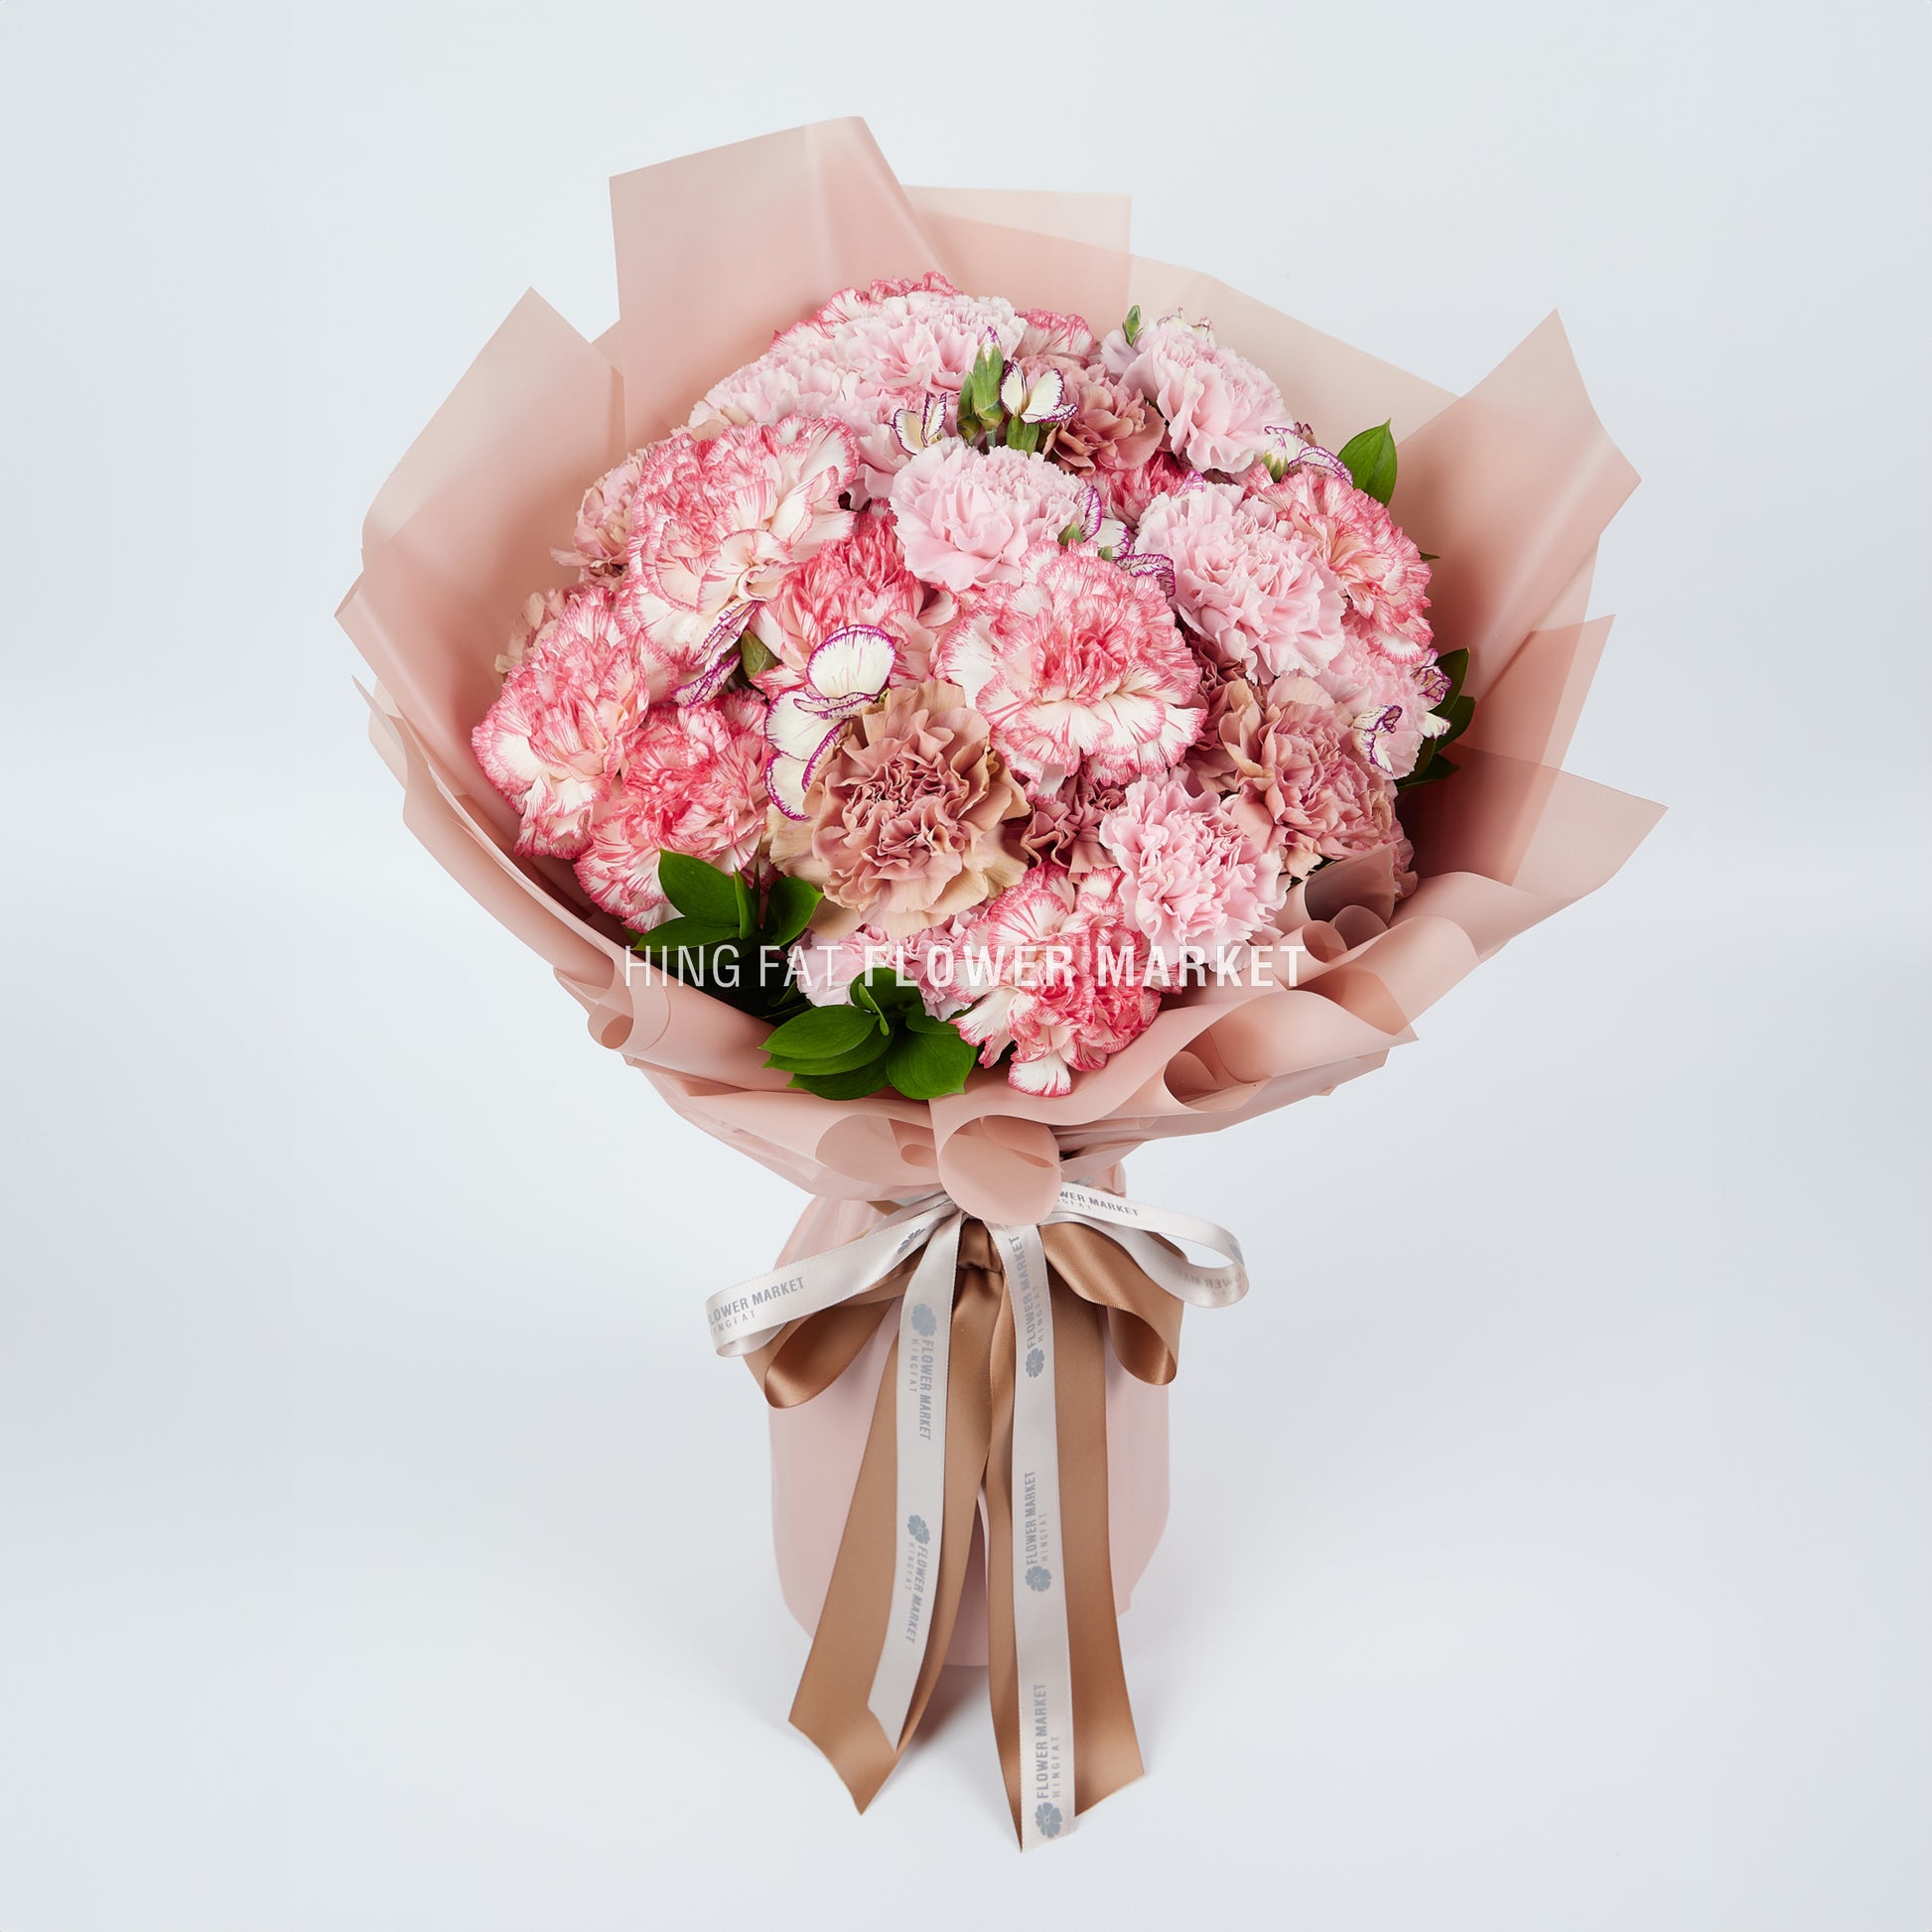 粉色康乃馨花束 Pink carnation bouquet